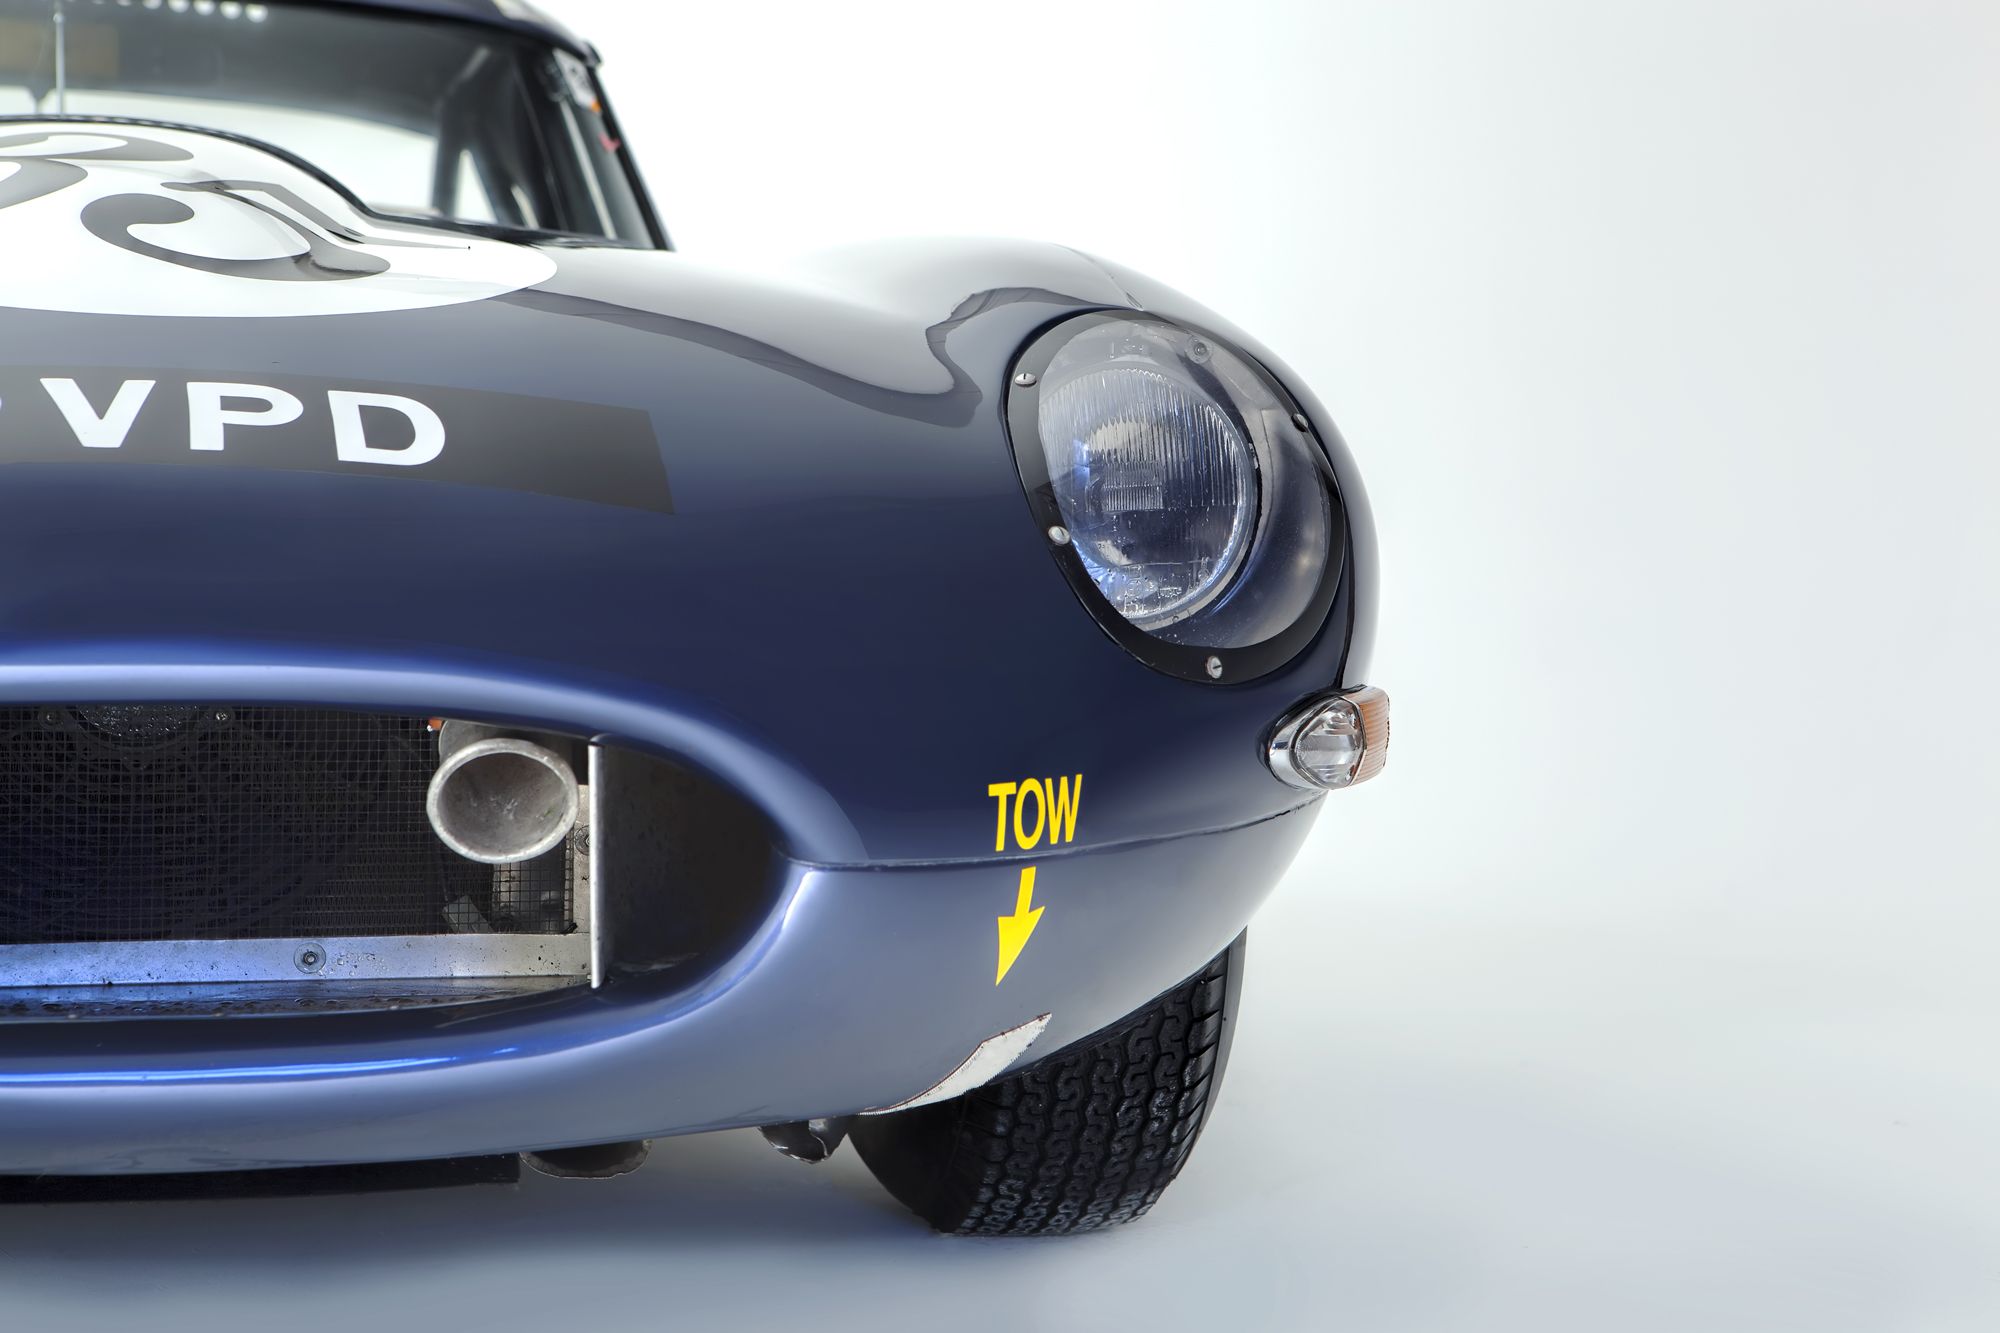 H&H Classics, car auction, 1961 Jaguar E-Type